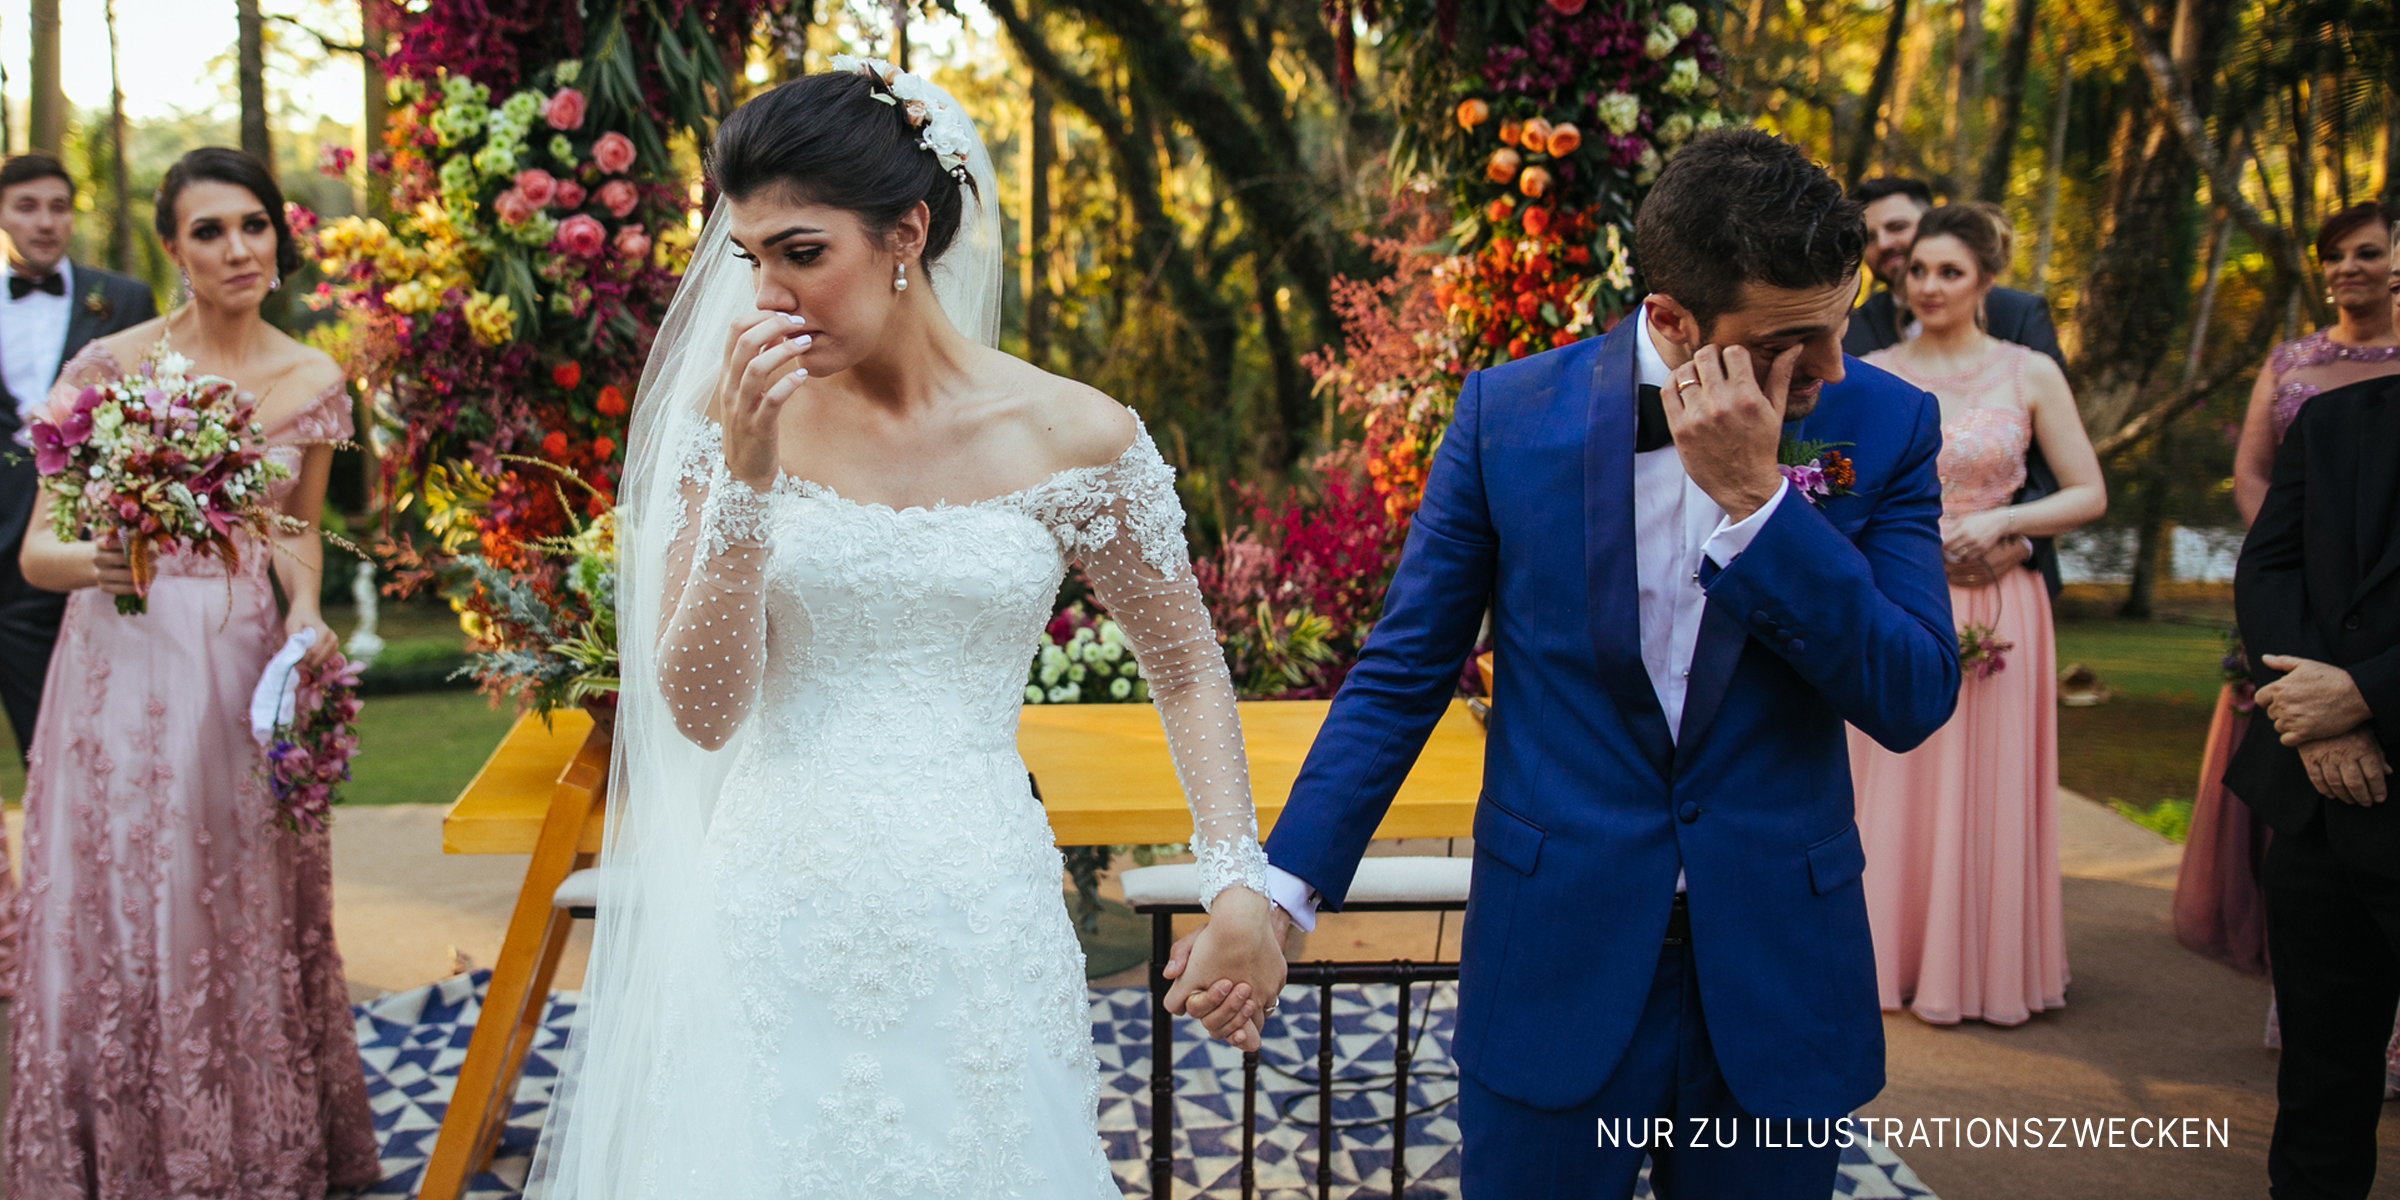 Braut und Bräutigam | Quelle: Getty Images